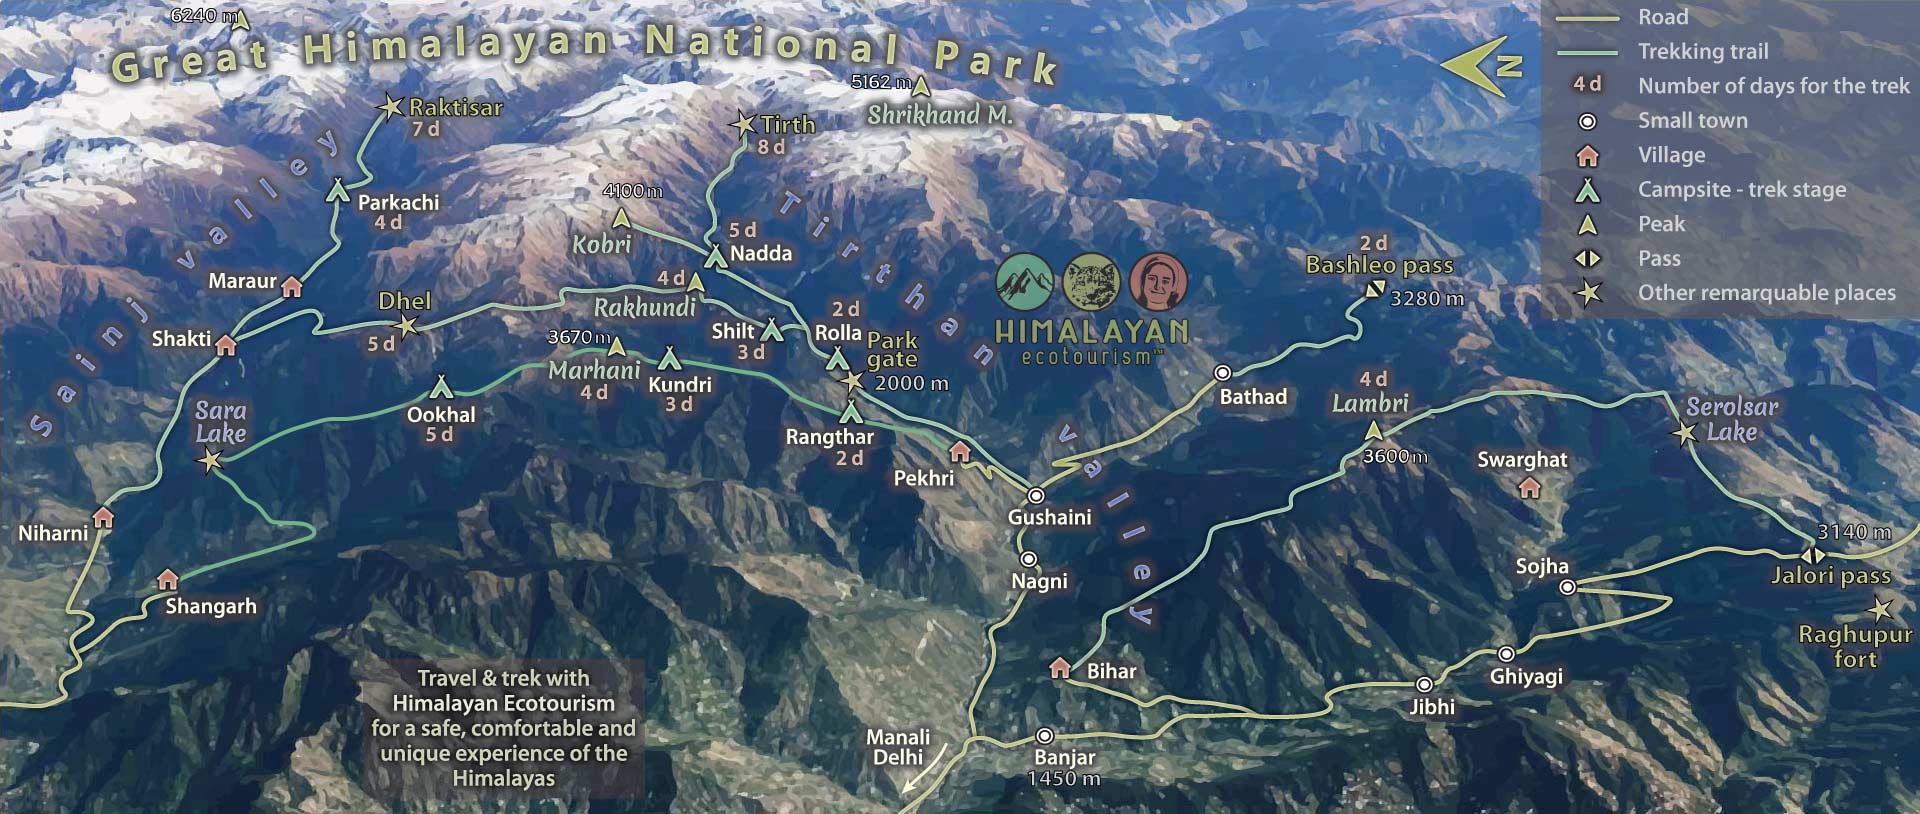 Great Himalayan National Park Trek Map